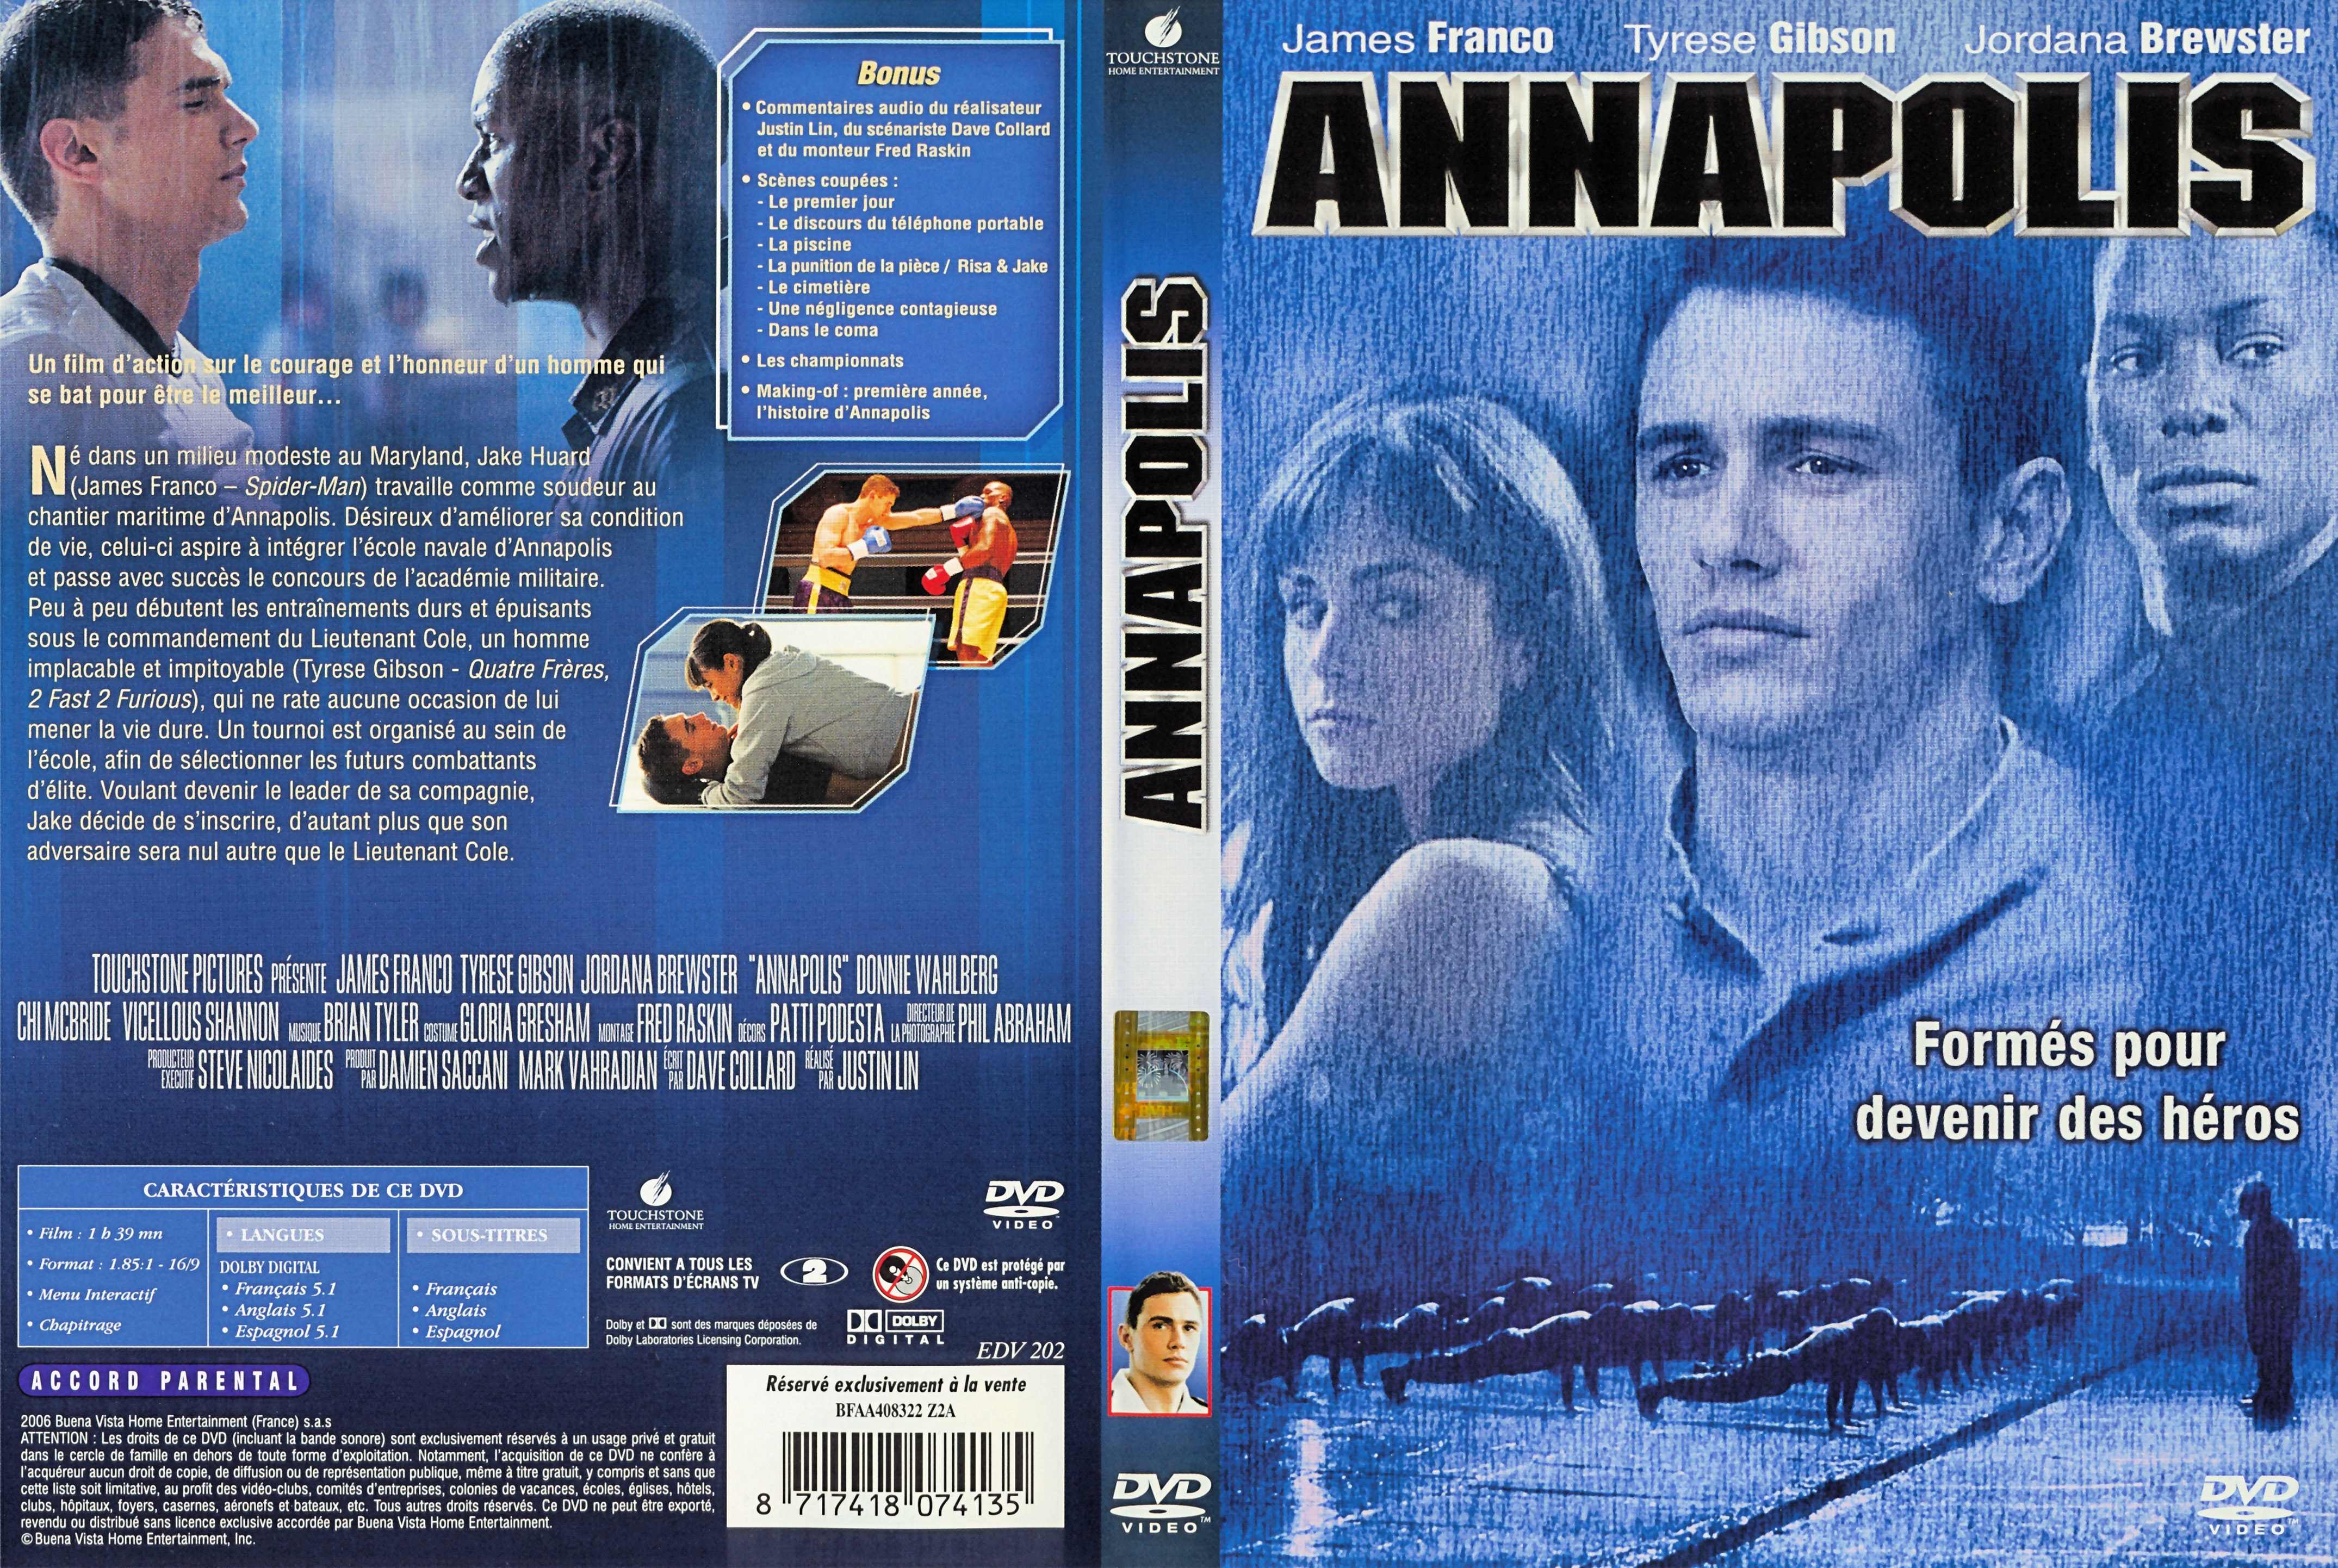 Jaquette DVD Annapolis